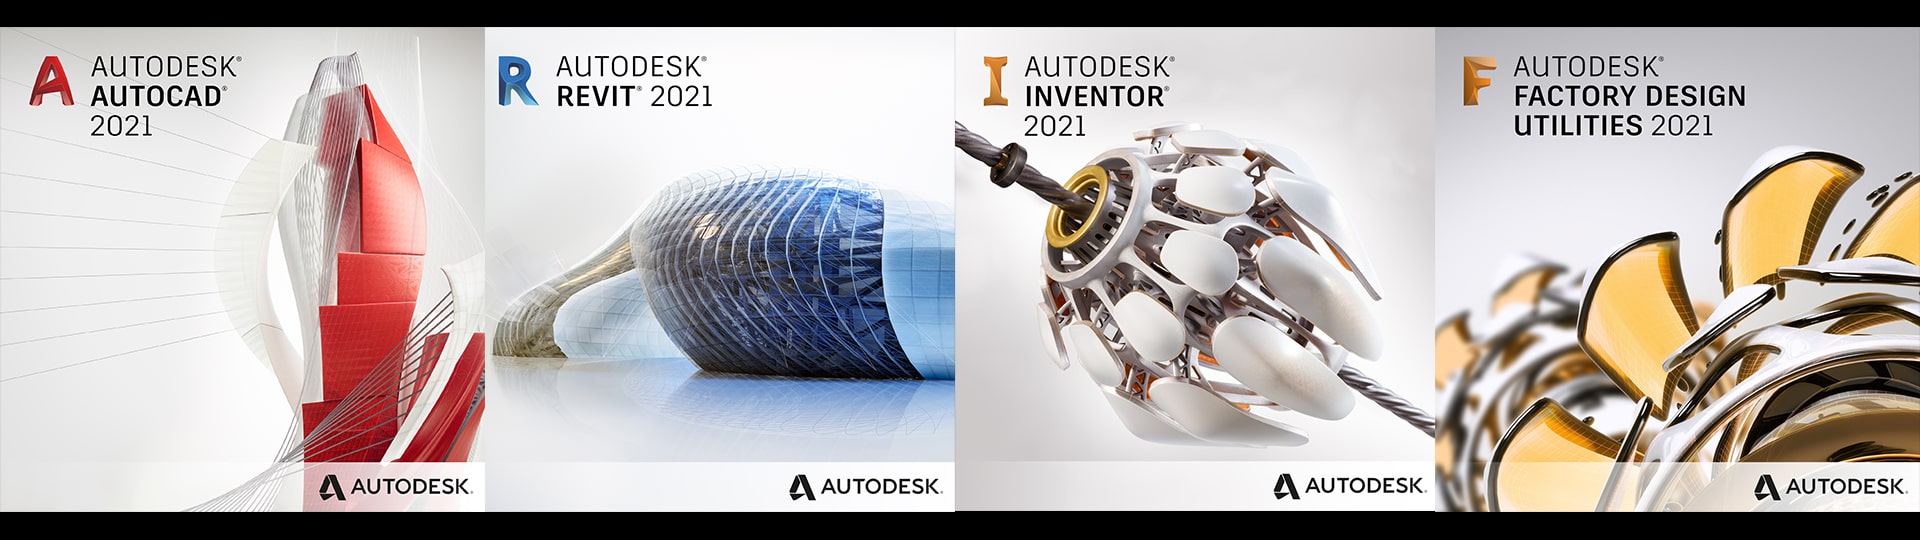 Програмне забезпечення Autodesk: AutoCAD, Inventor, Design Utility и Revit